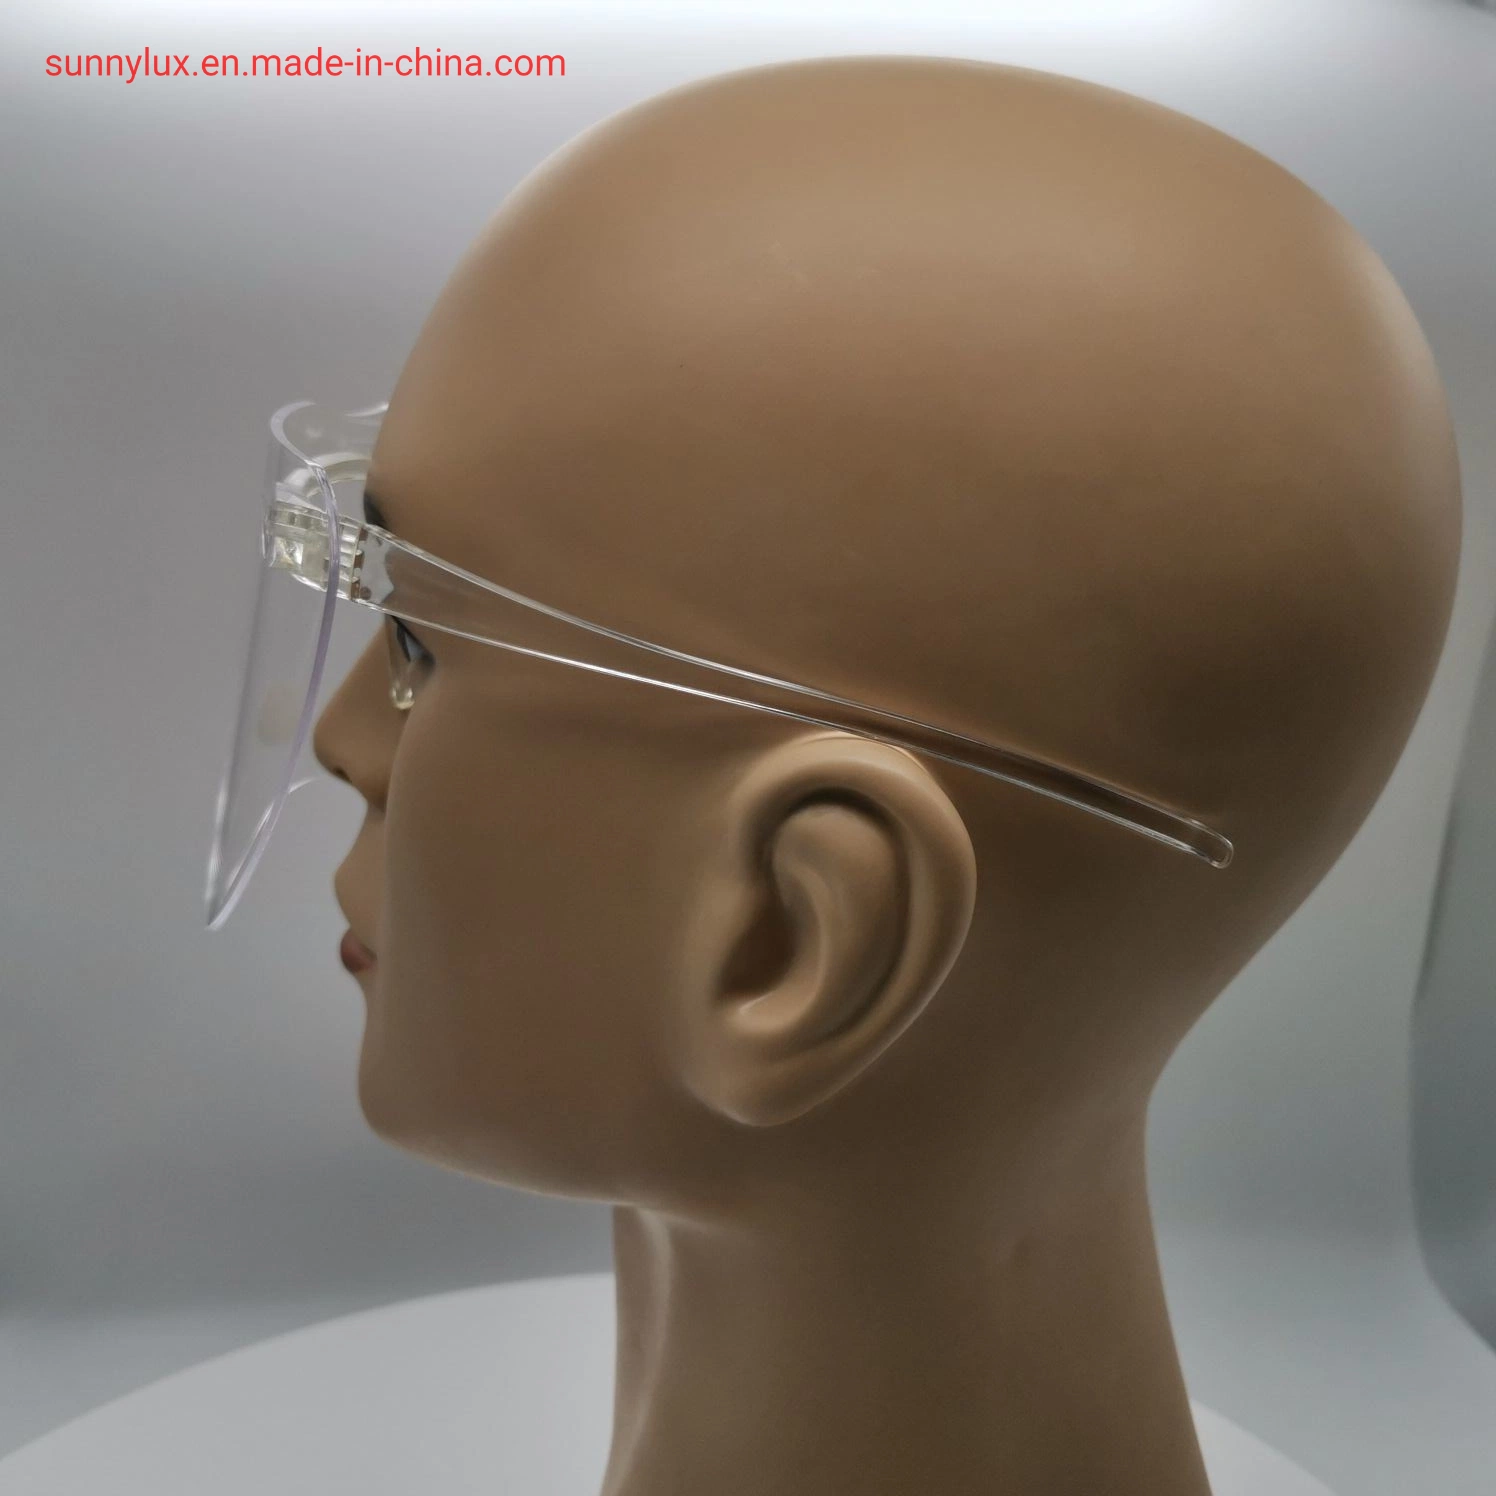 نظارات واقية من البلاستيك فائقة لحماية العين ونظارات واقية للصحة الشخصية والسلامة